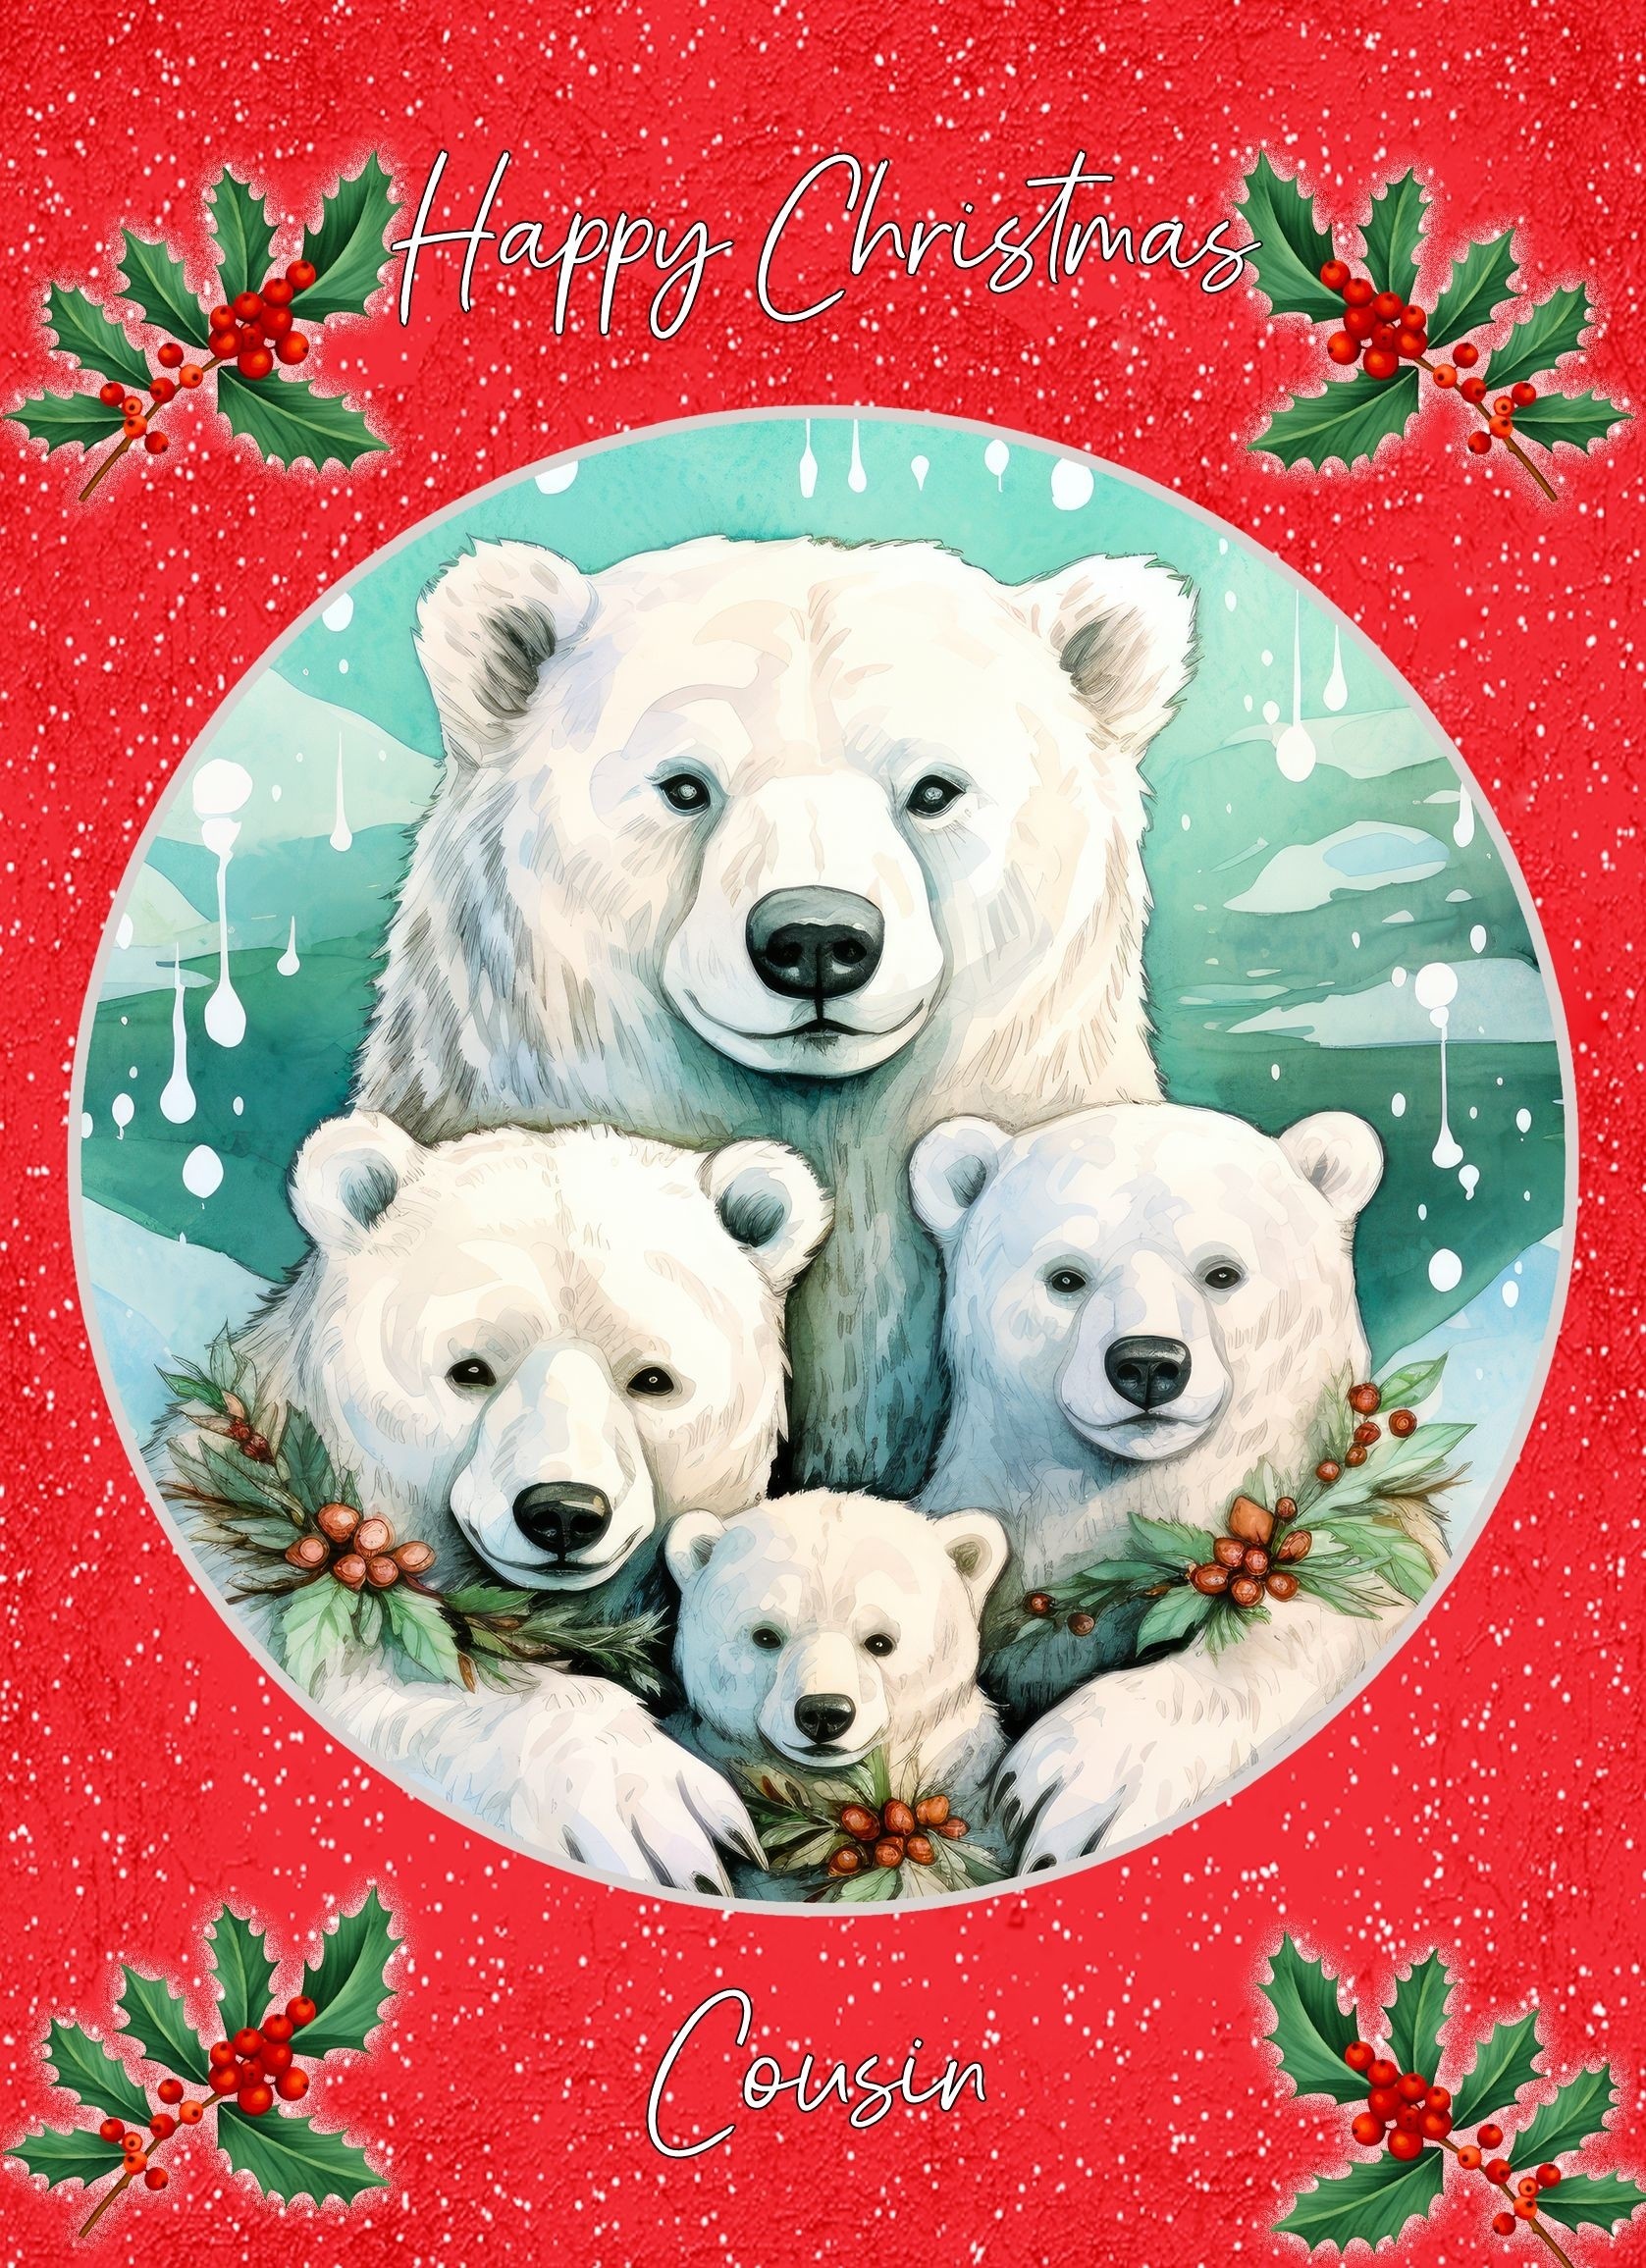 Christmas Card For Cousin (Globe, Polar Bear Family)